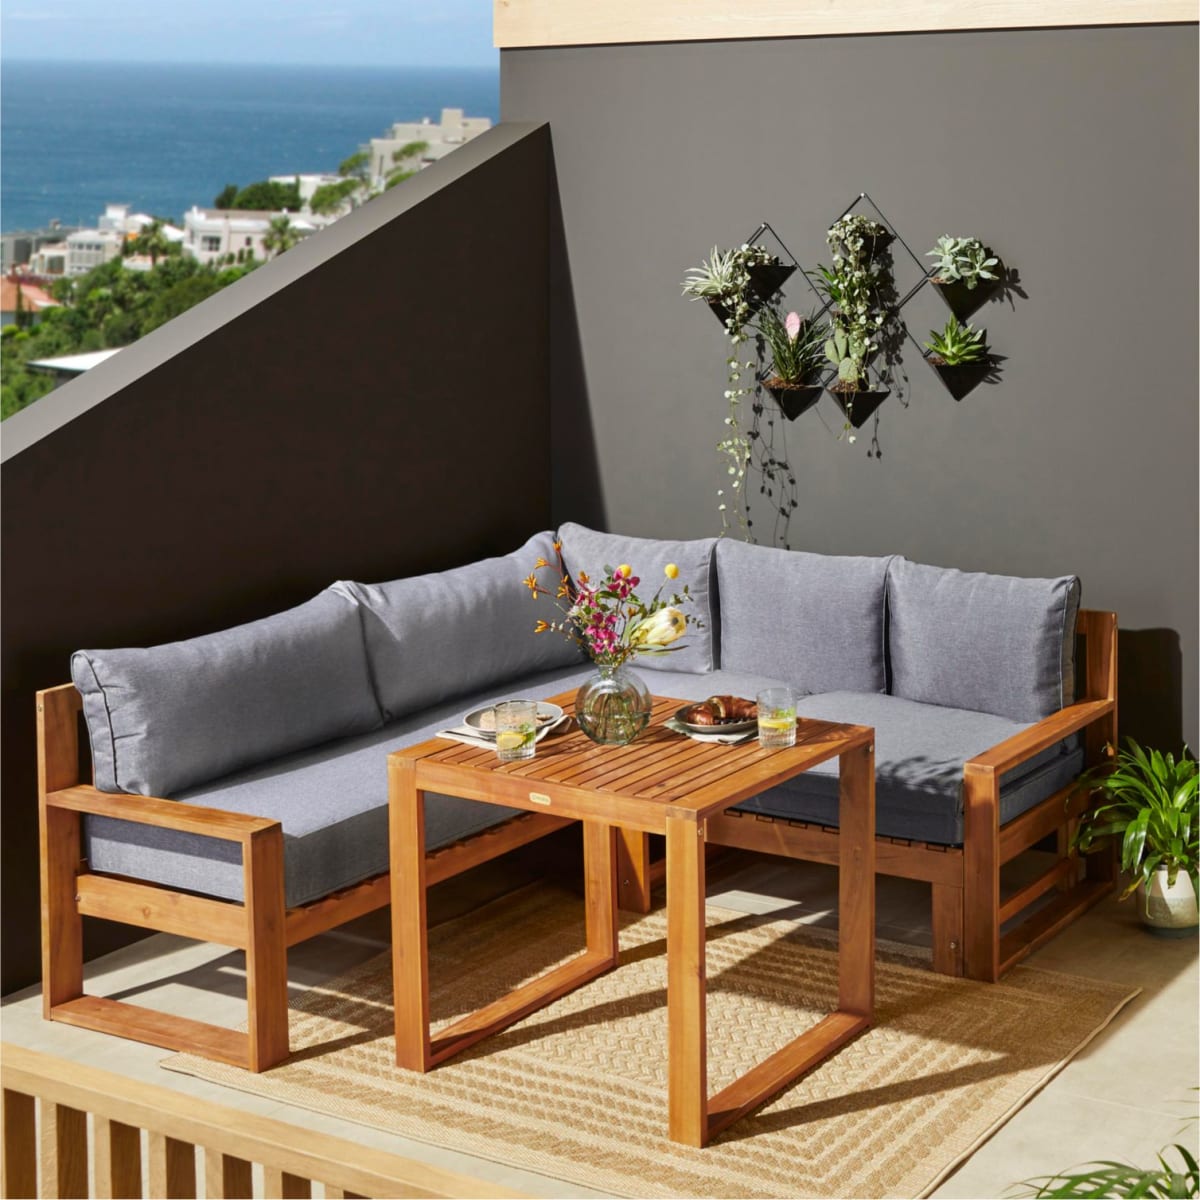 outdoor-möbel set gomera, tisch & eckbank mit ausziehbarem fußteil, inkl.  auflagen, natur-look, holz